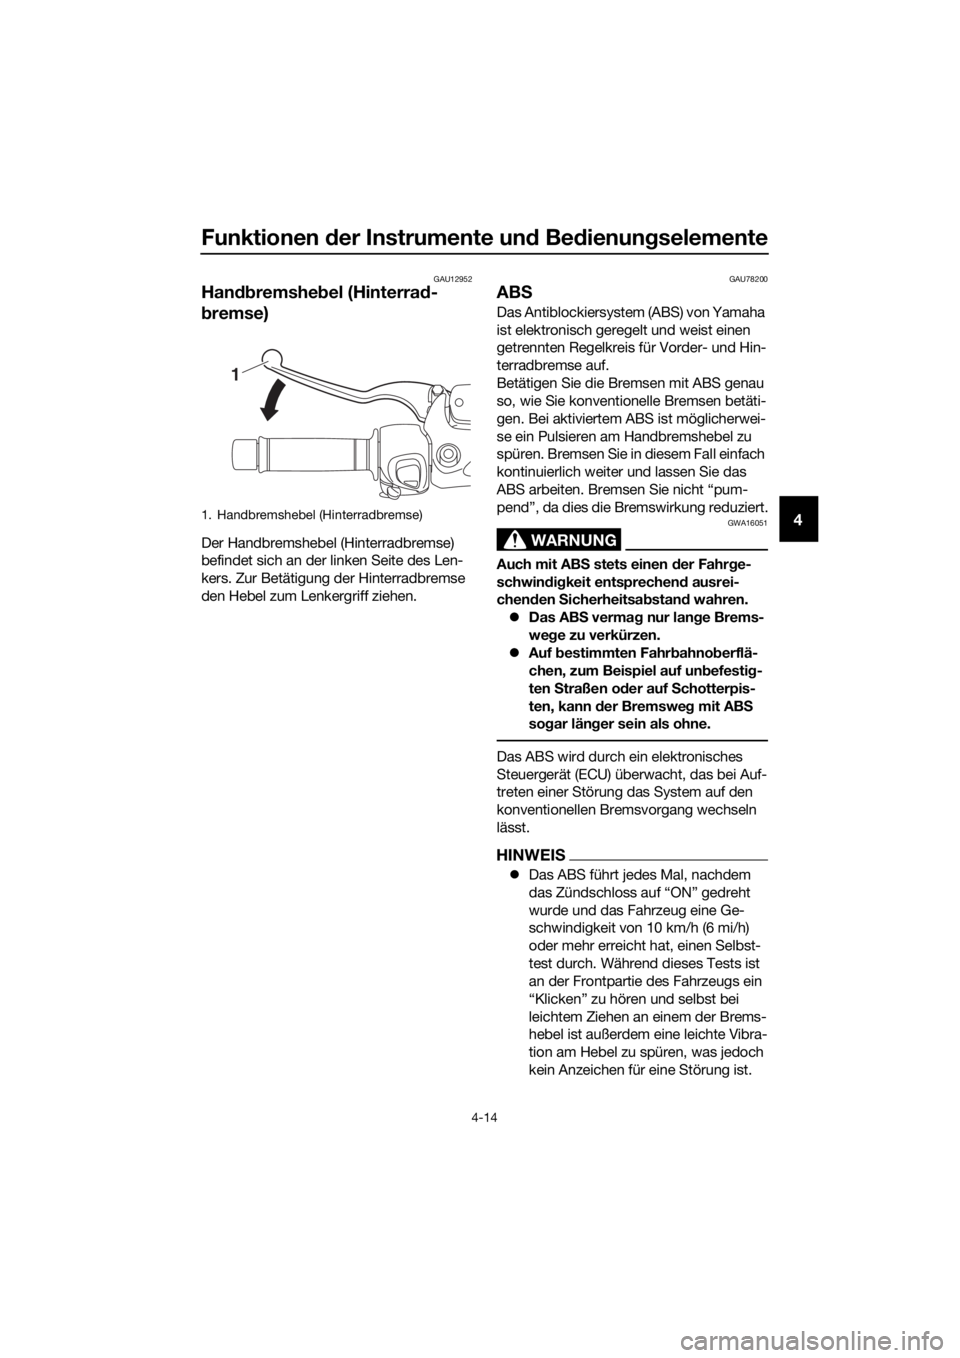 YAMAHA XMAX 300 2018  Betriebsanleitungen (in German) Funktionen der Instrumente und Bedienungselemente
4-14
4
GAU12952
Handbremshebel (Hinterrad-
bremse)
Der Handbremshebel (Hinterradbremse) 
befindet sich an der linken Seite des Len-
kers. Zur Betätig